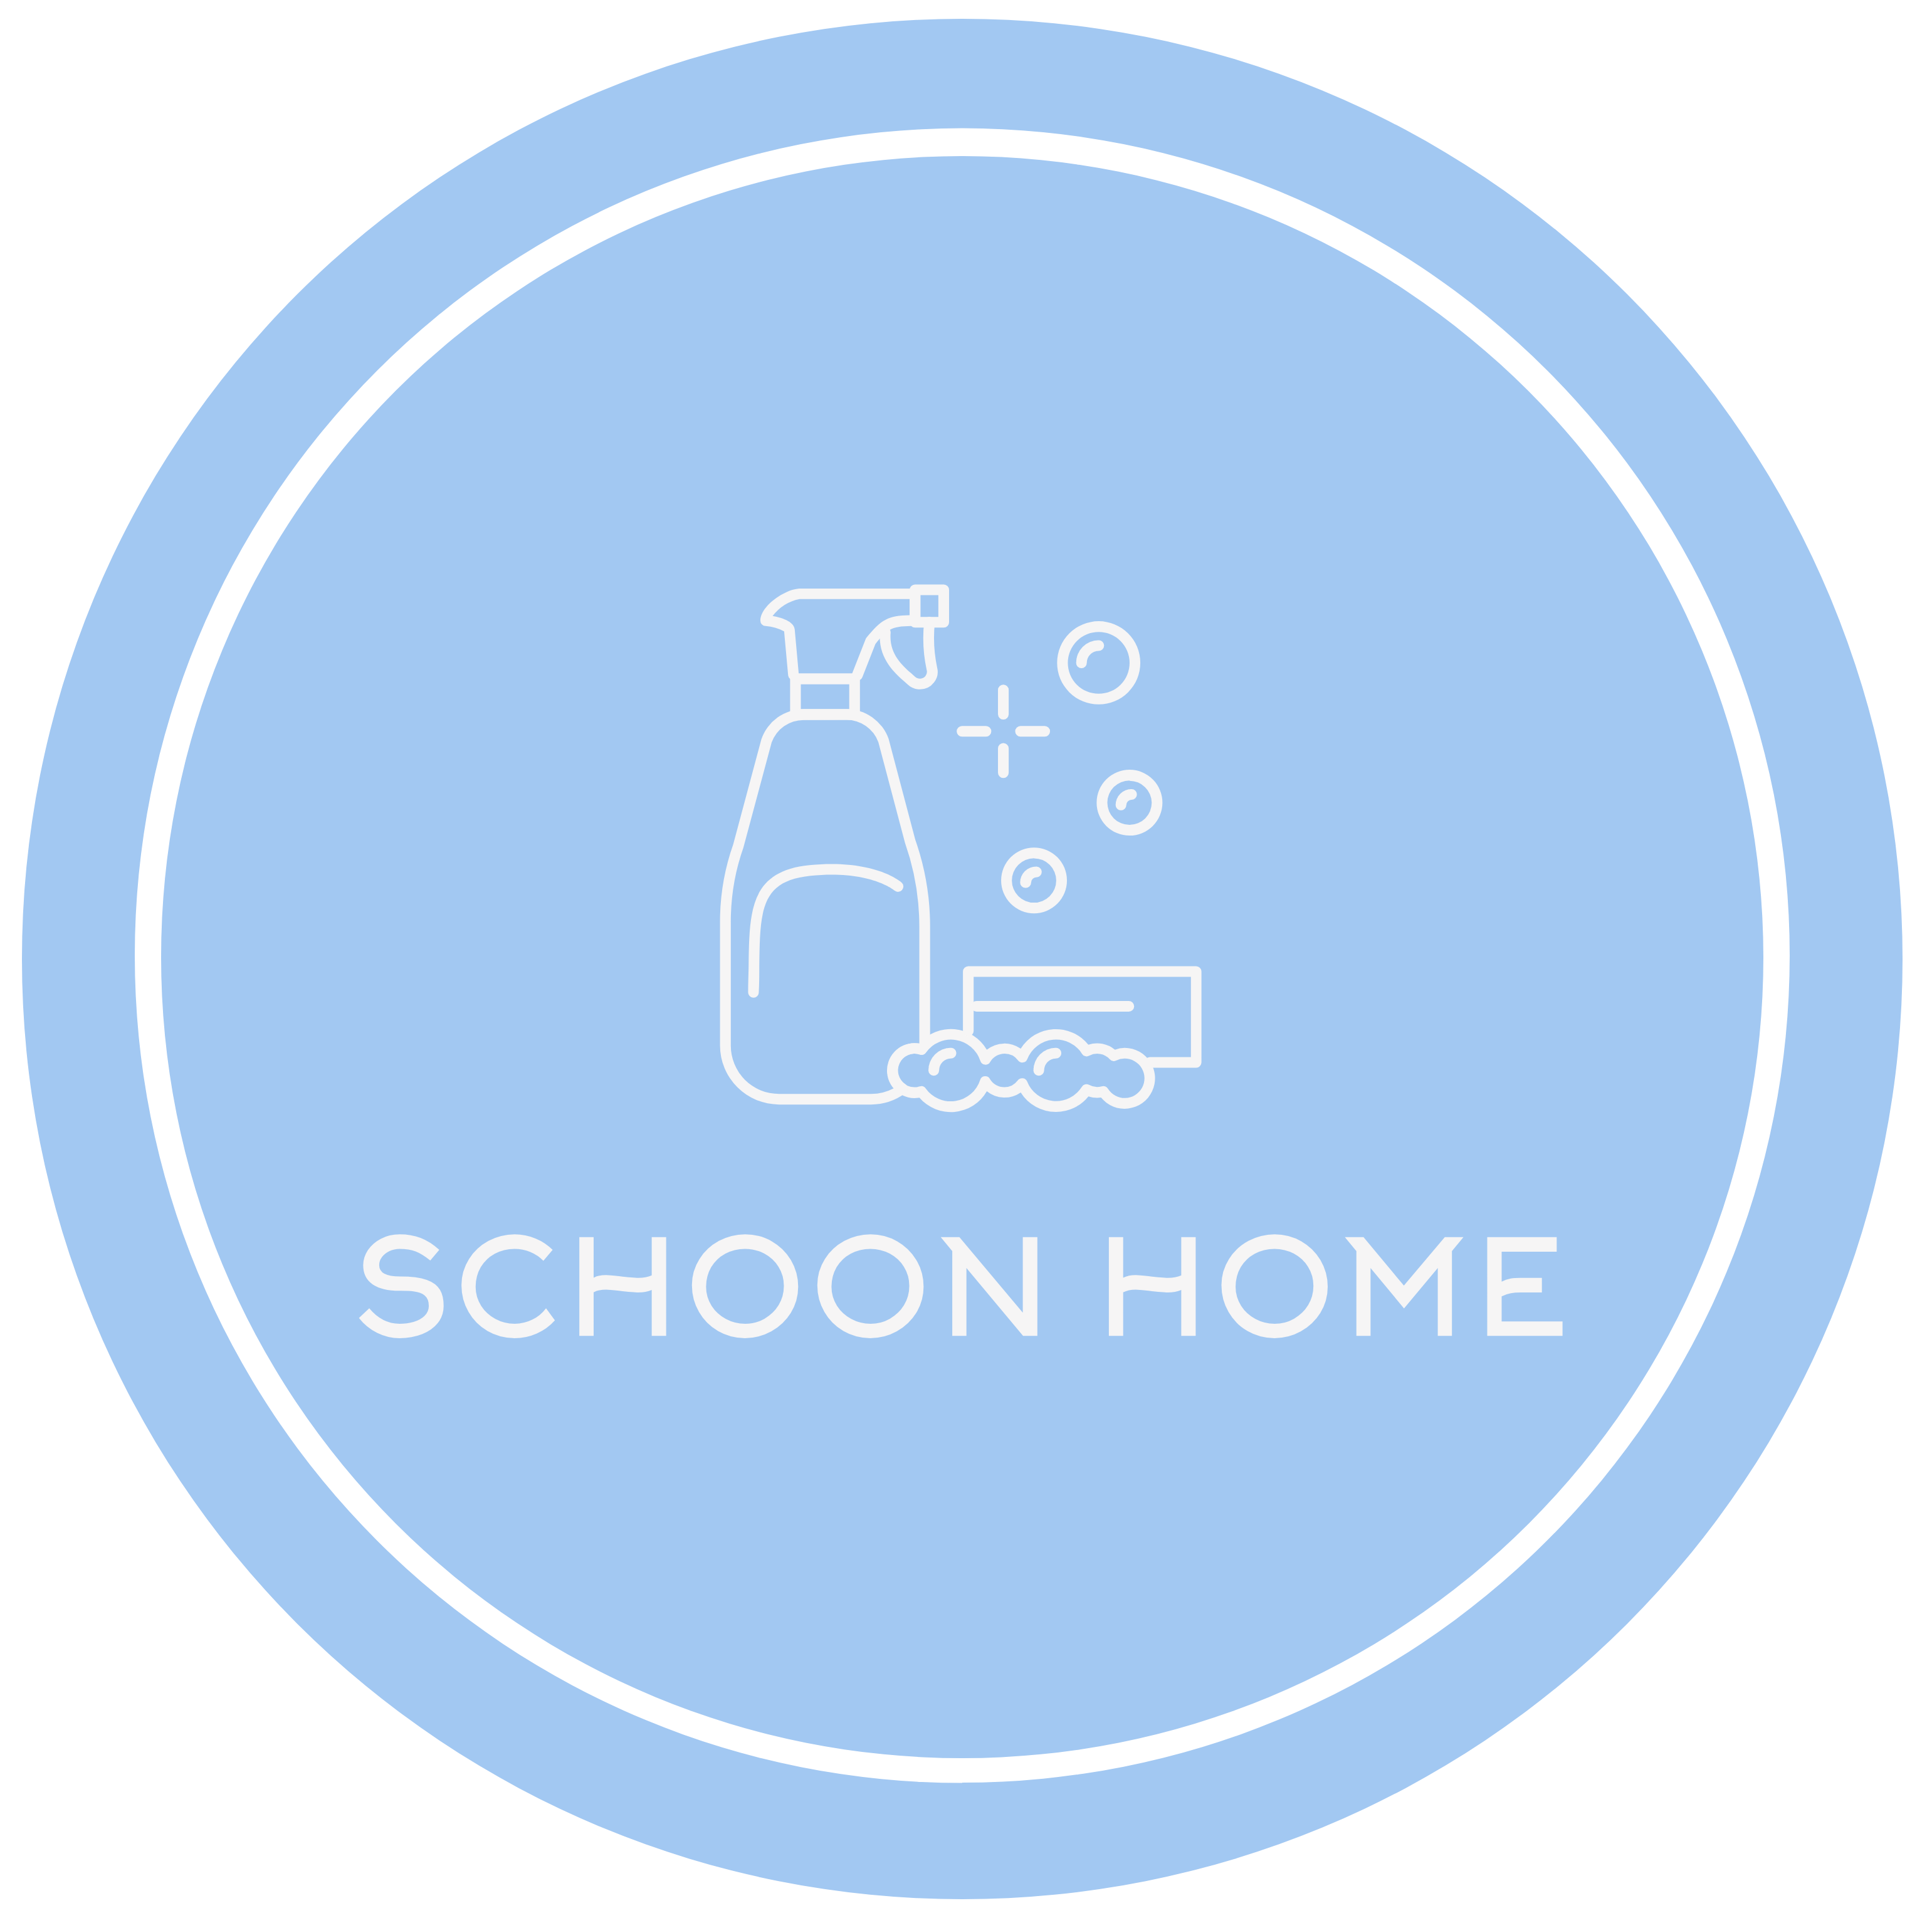 schoon home logo